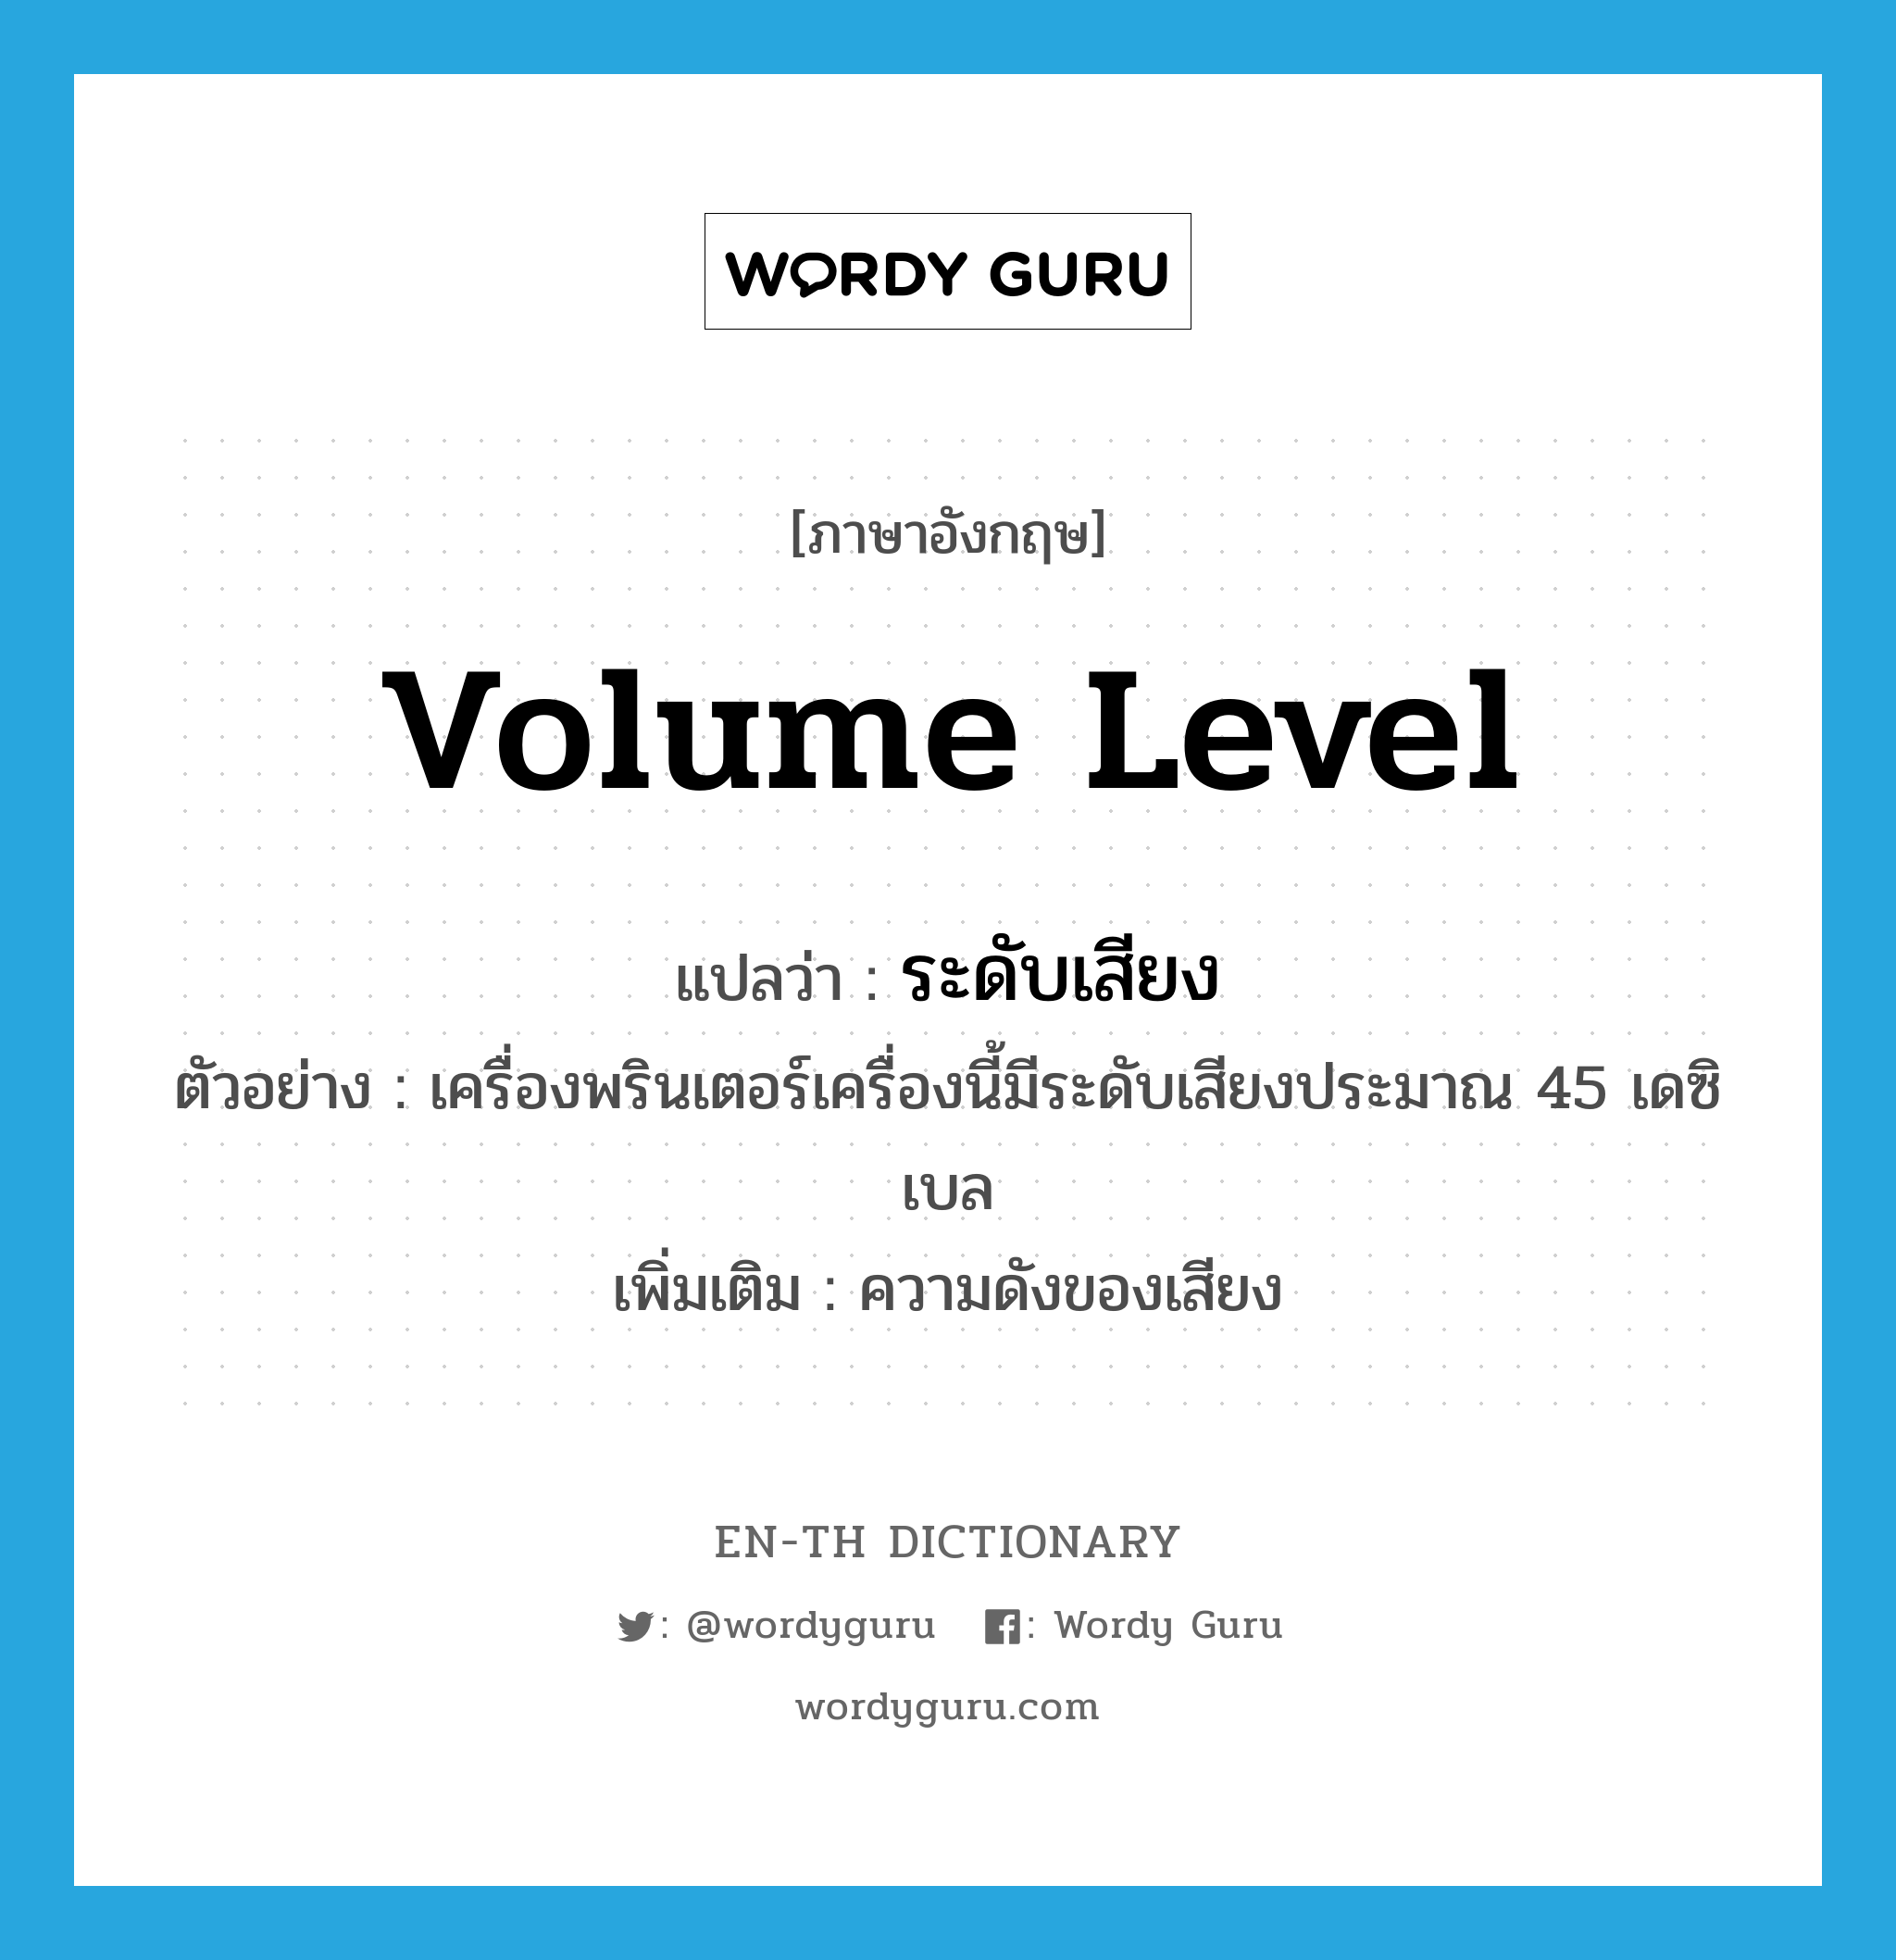 volume level แปลว่า?, คำศัพท์ภาษาอังกฤษ volume level แปลว่า ระดับเสียง ประเภท N ตัวอย่าง เครื่องพรินเตอร์เครื่องนี้มีระดับเสียงประมาณ 45 เดซิเบล เพิ่มเติม ความดังของเสียง หมวด N